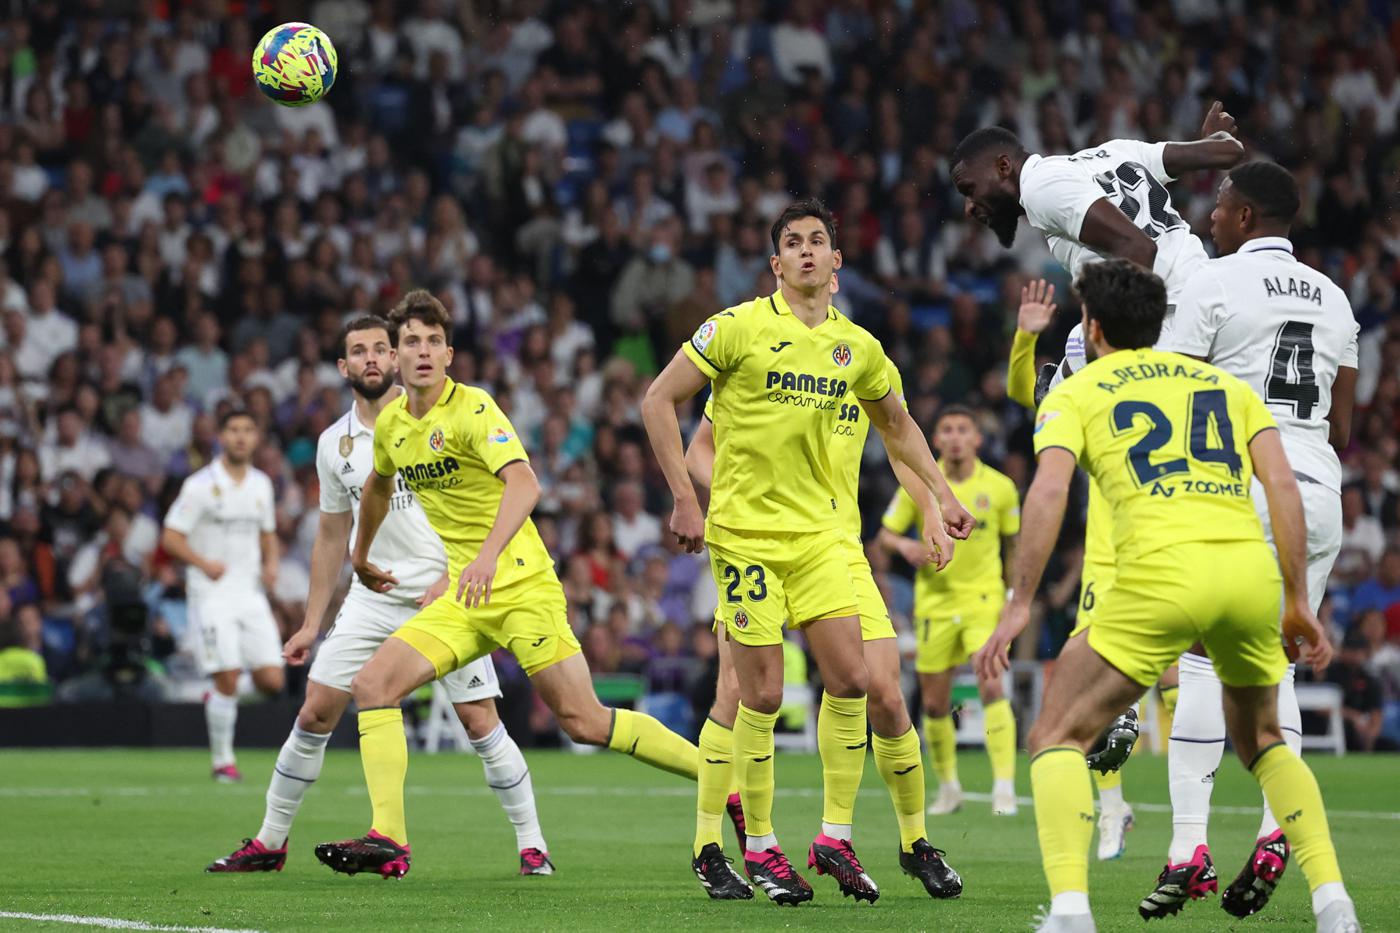 Real Madrid gegen Villarreal - 2-3. Spanische Liga, 28. Runde. Spielbericht, Statistik.